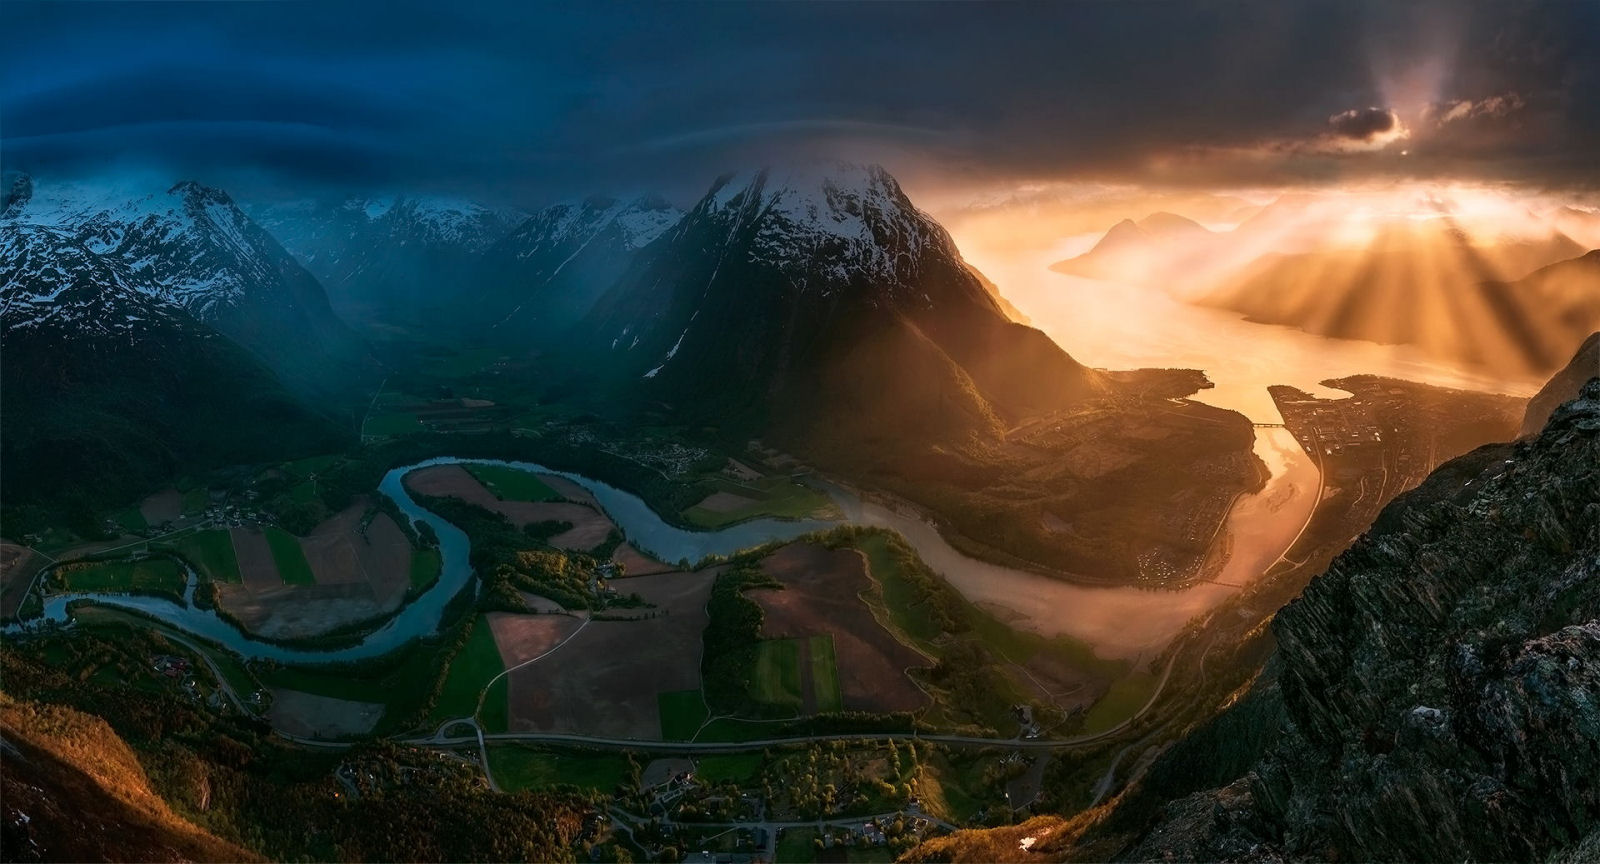 Fotgrafo aventureiro sobe no alto das montanhas para capturar paisagens deslumbrantes 13